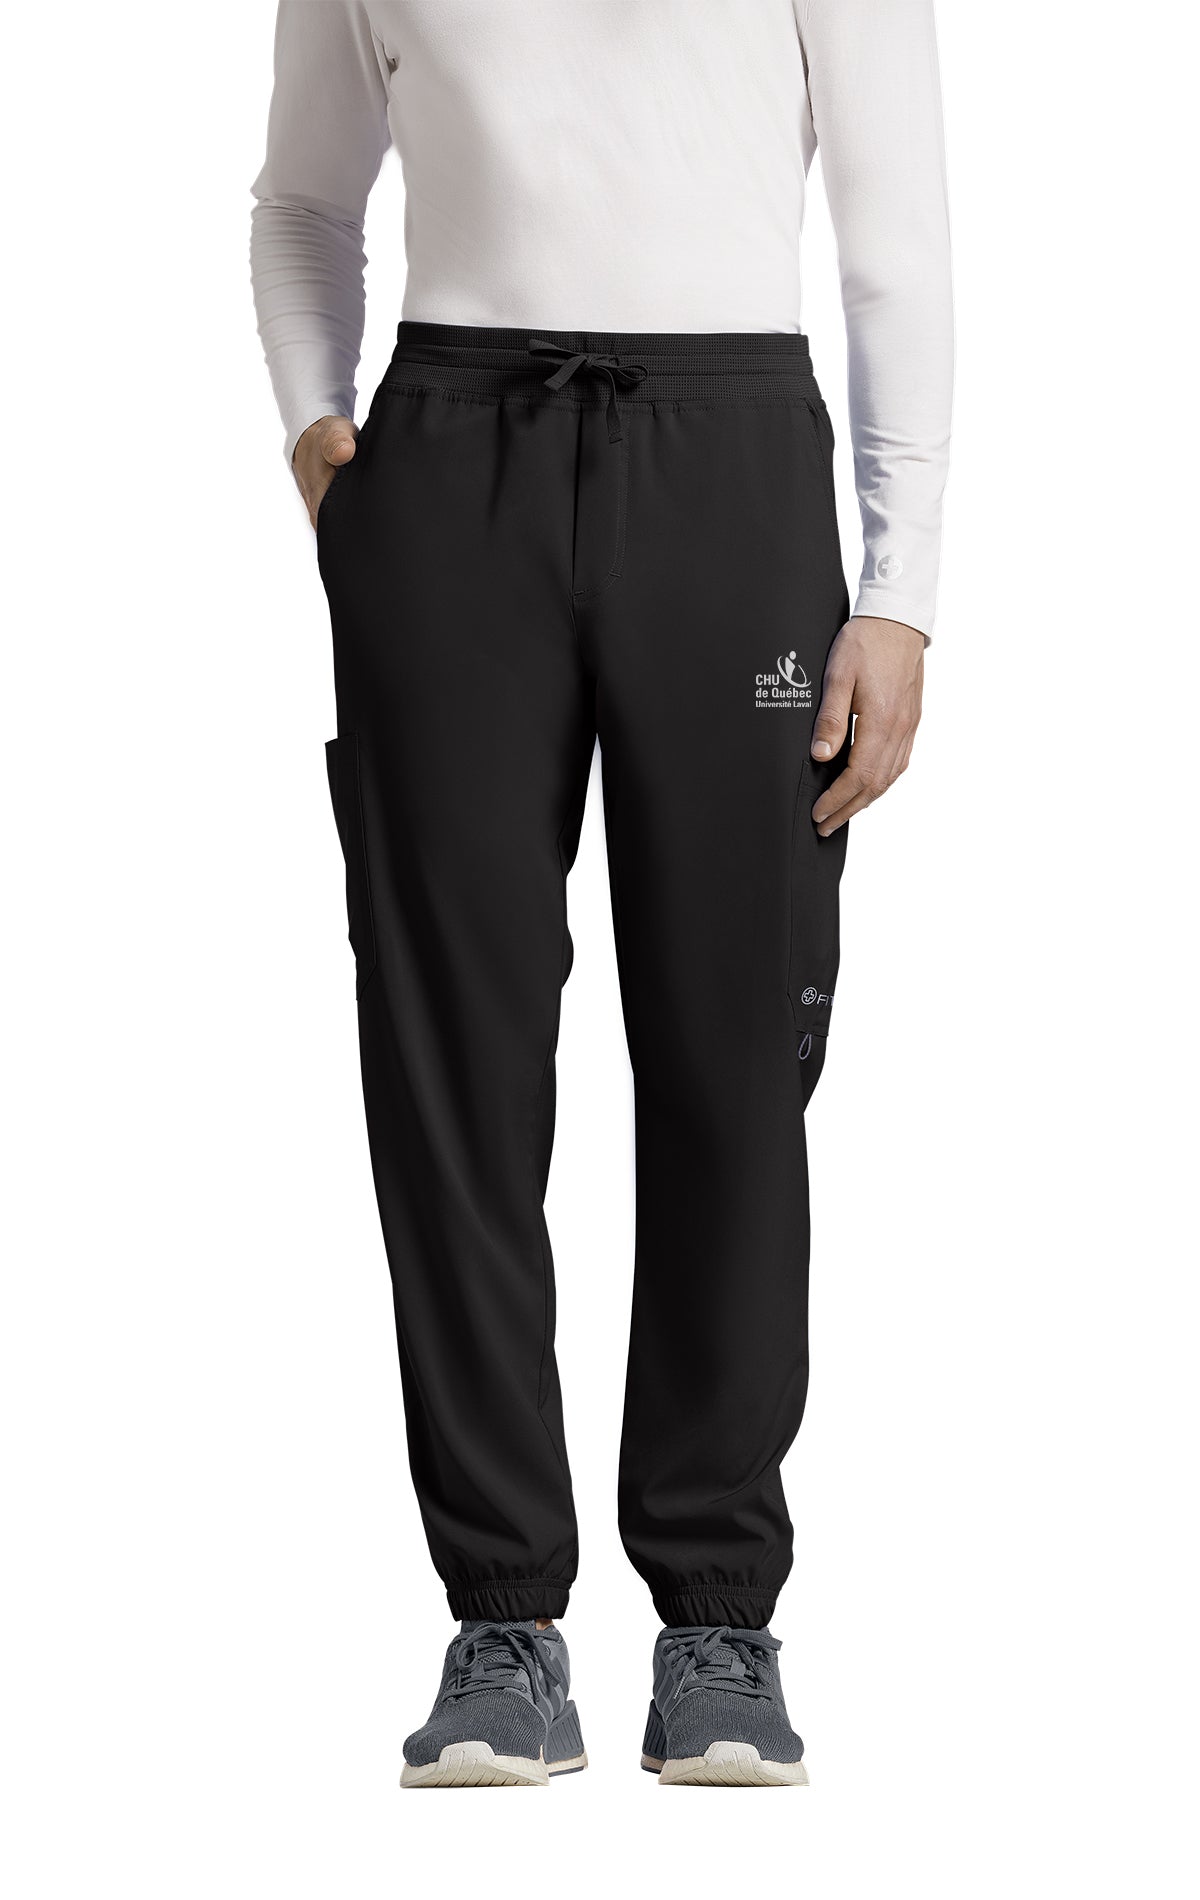 Pantalon pour infirmiers type Jogger Uniformes Sélect #223CHU noir